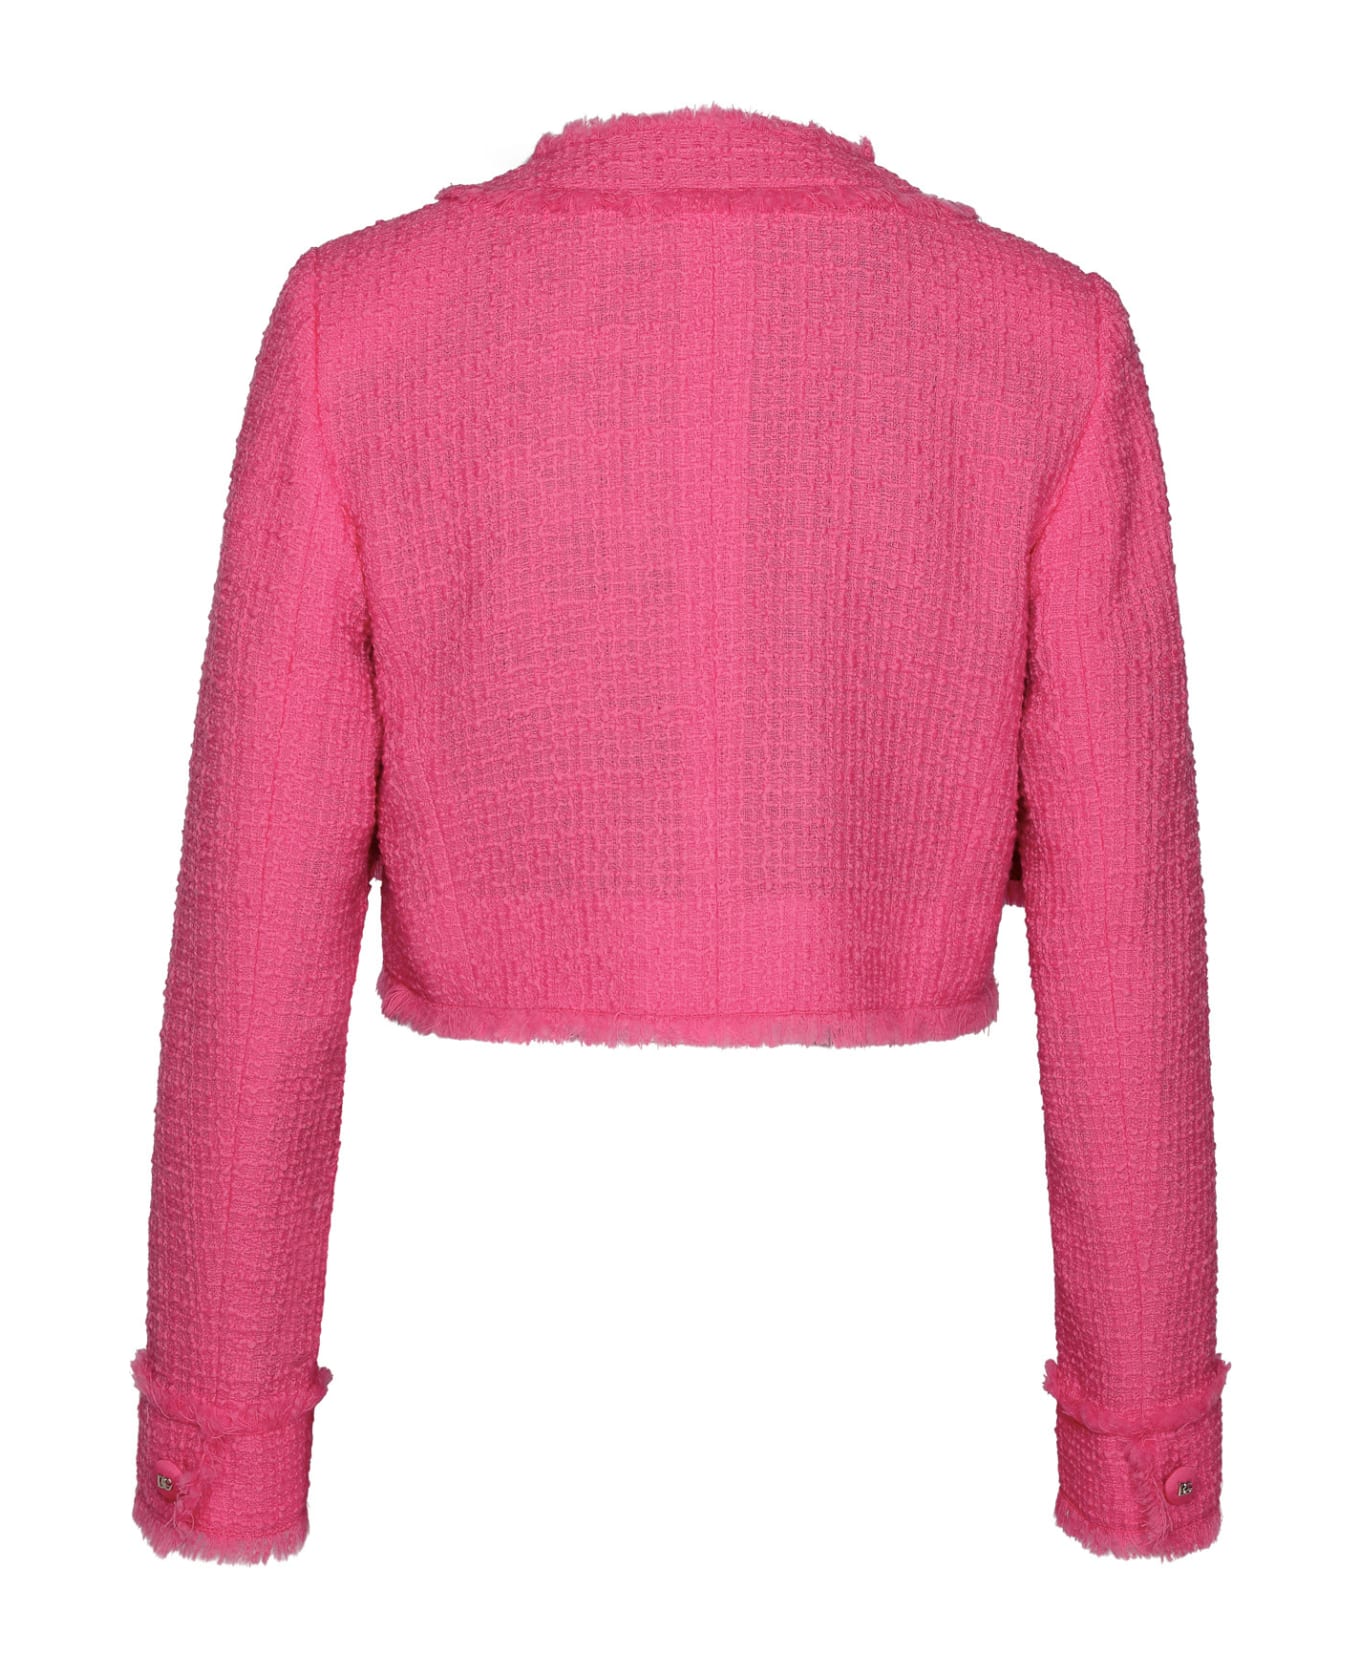 Dolce & Gabbana Tweed Jacket - Pink カーディガン